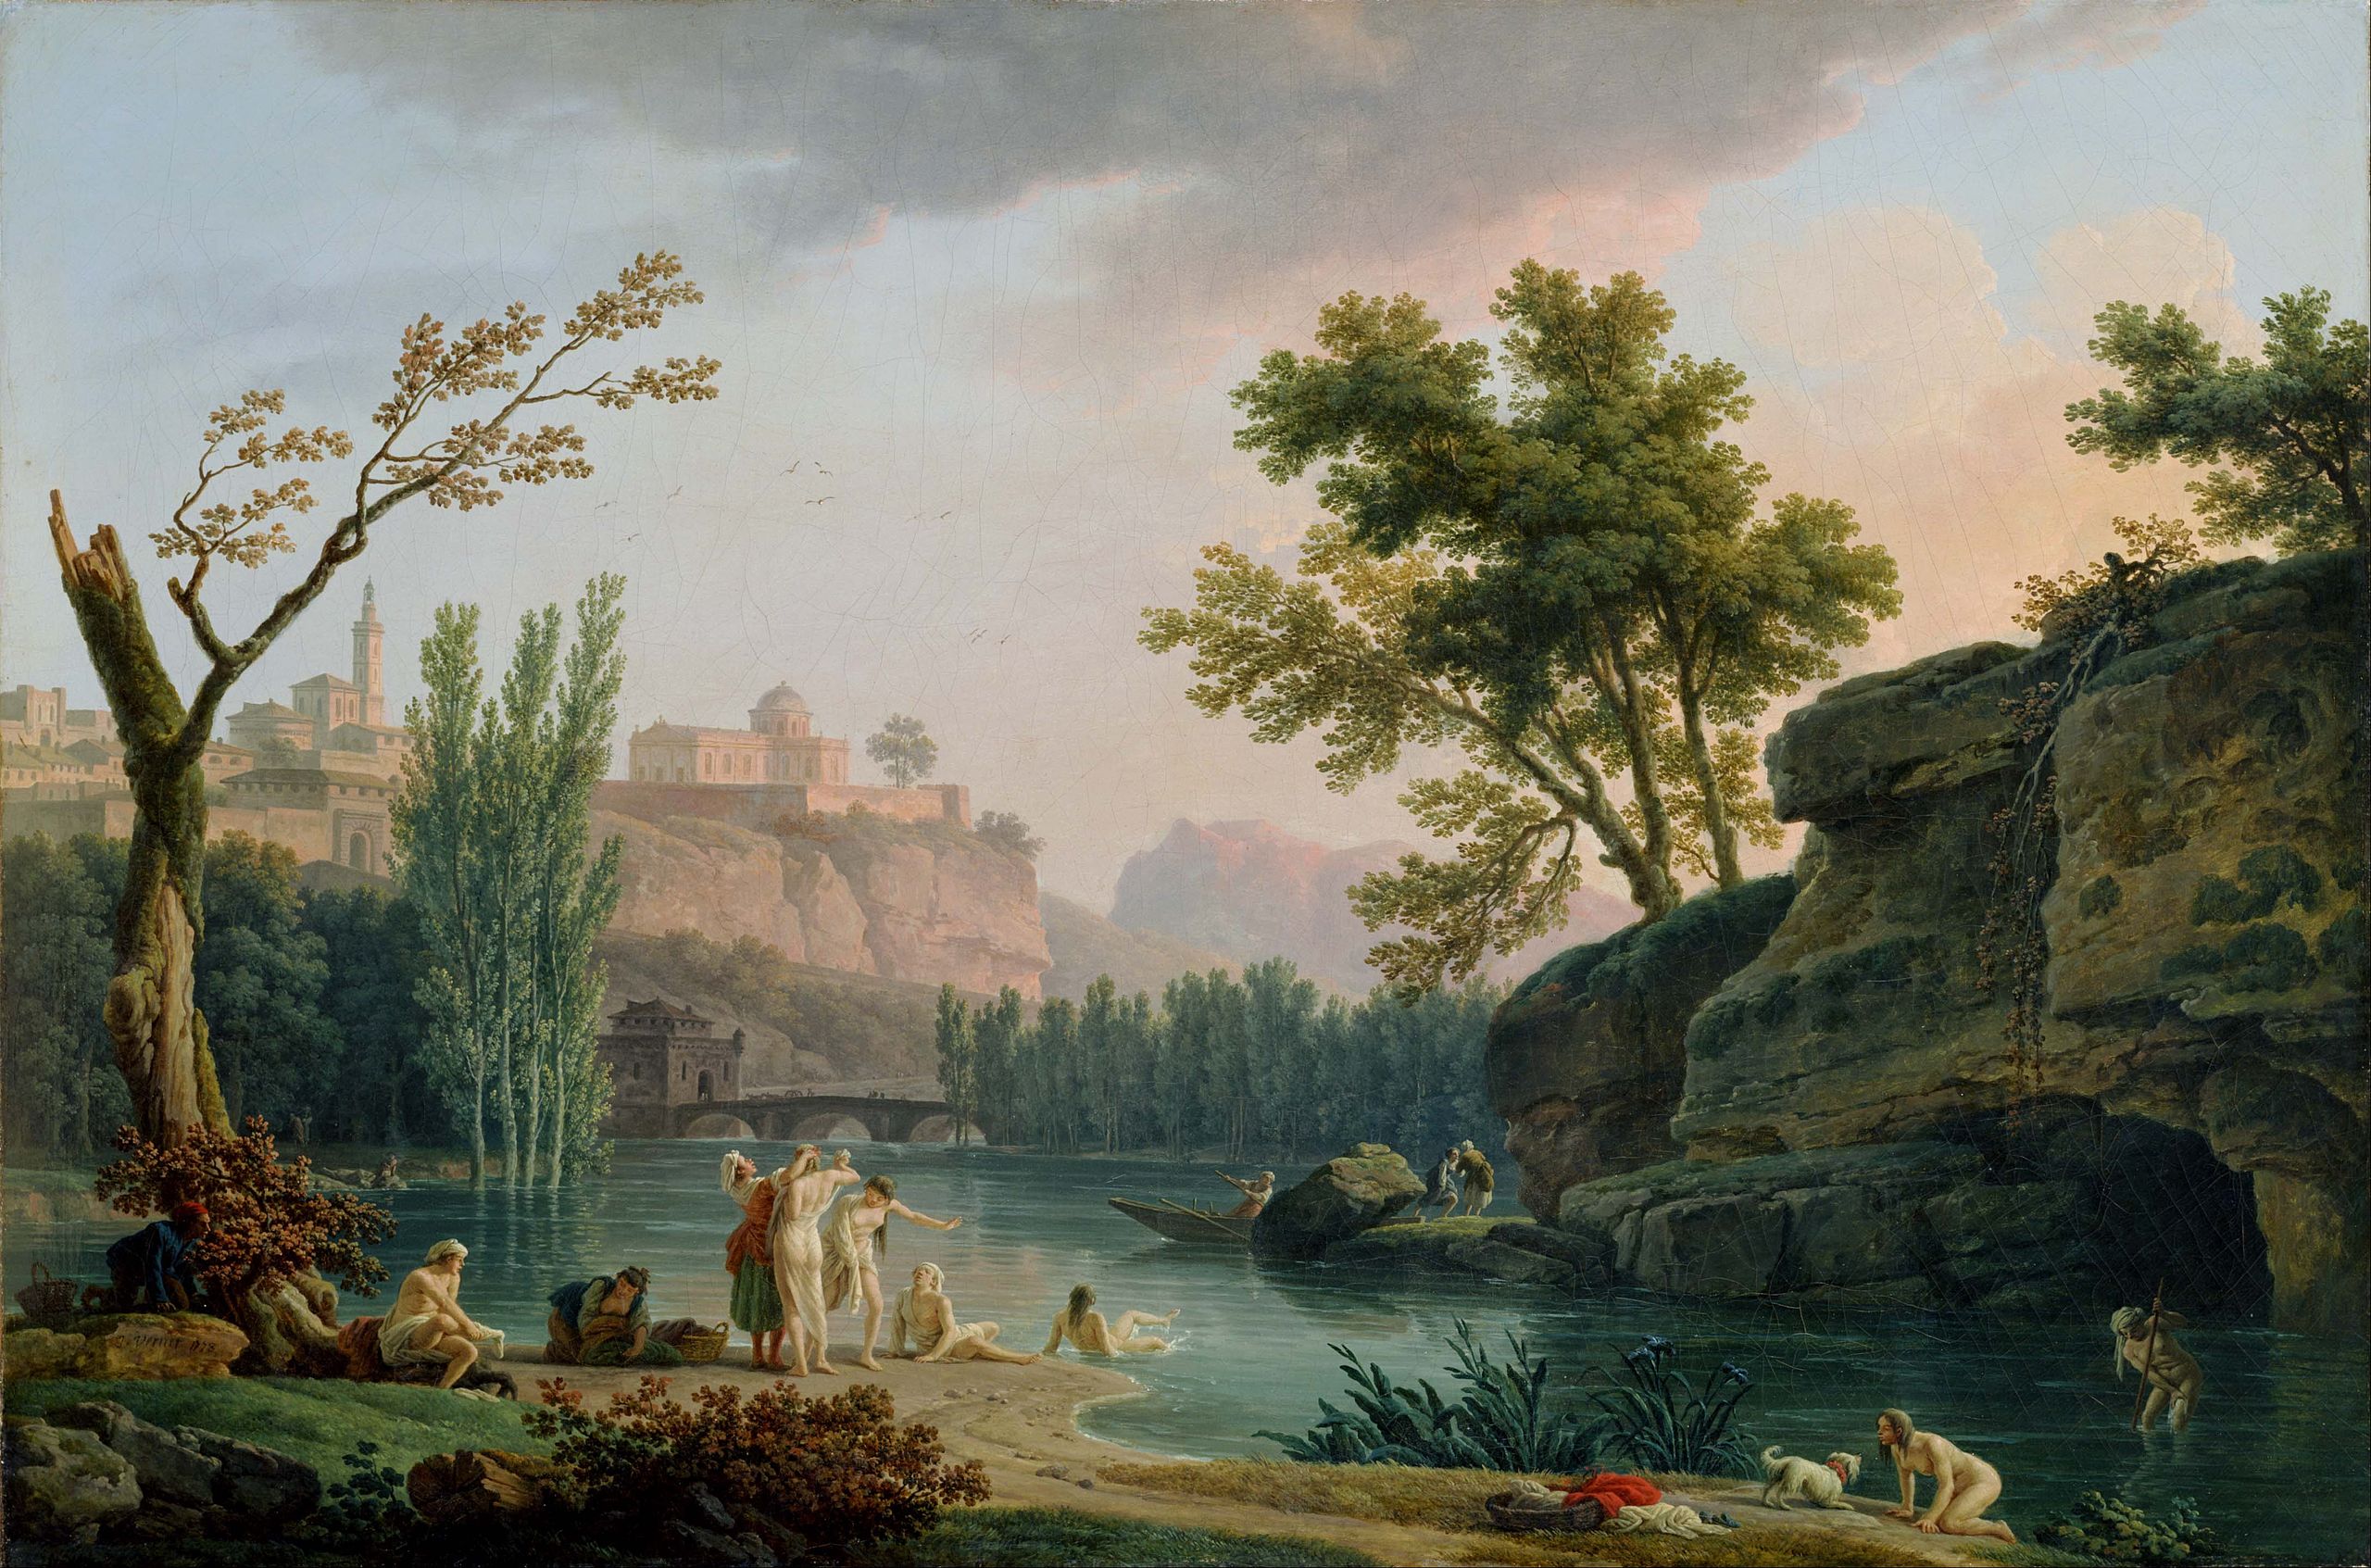 Tarde de verão, paisagem na Itália by Claude-Joseph Vernet - 1773 - 133 x 89 cm 